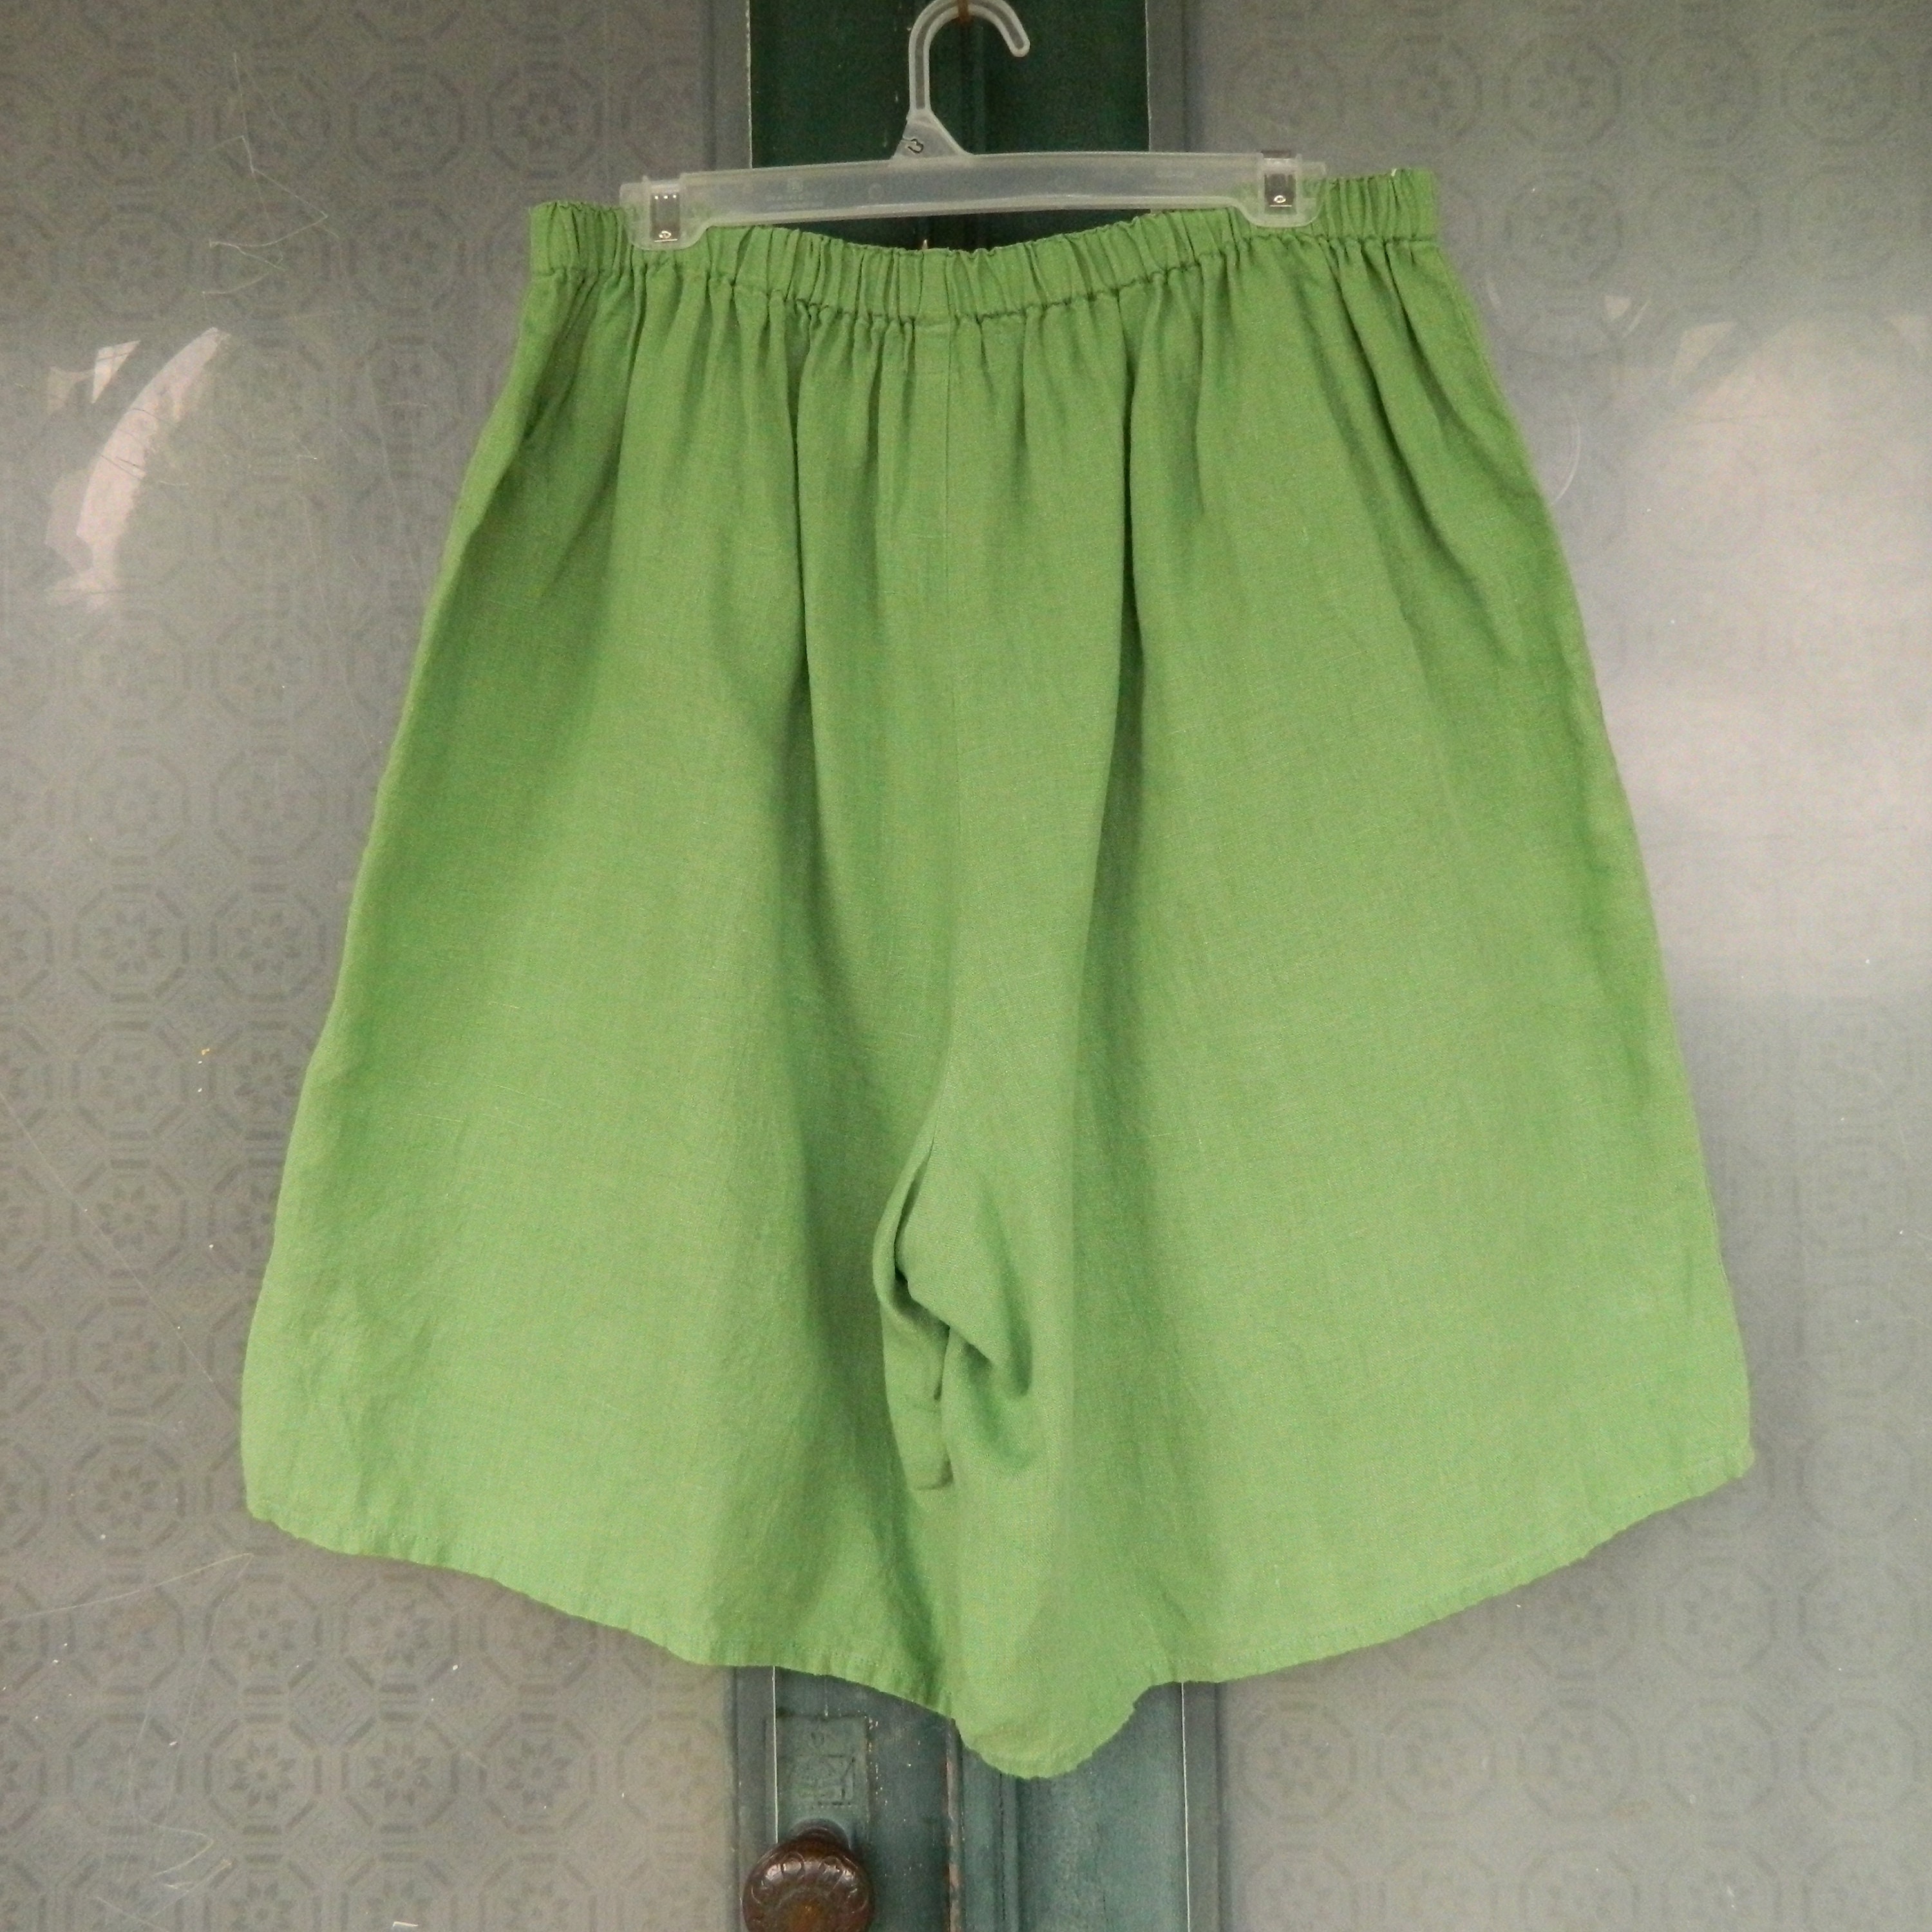 FLAX Engelheart Shorts -1G/1X- Green Linen